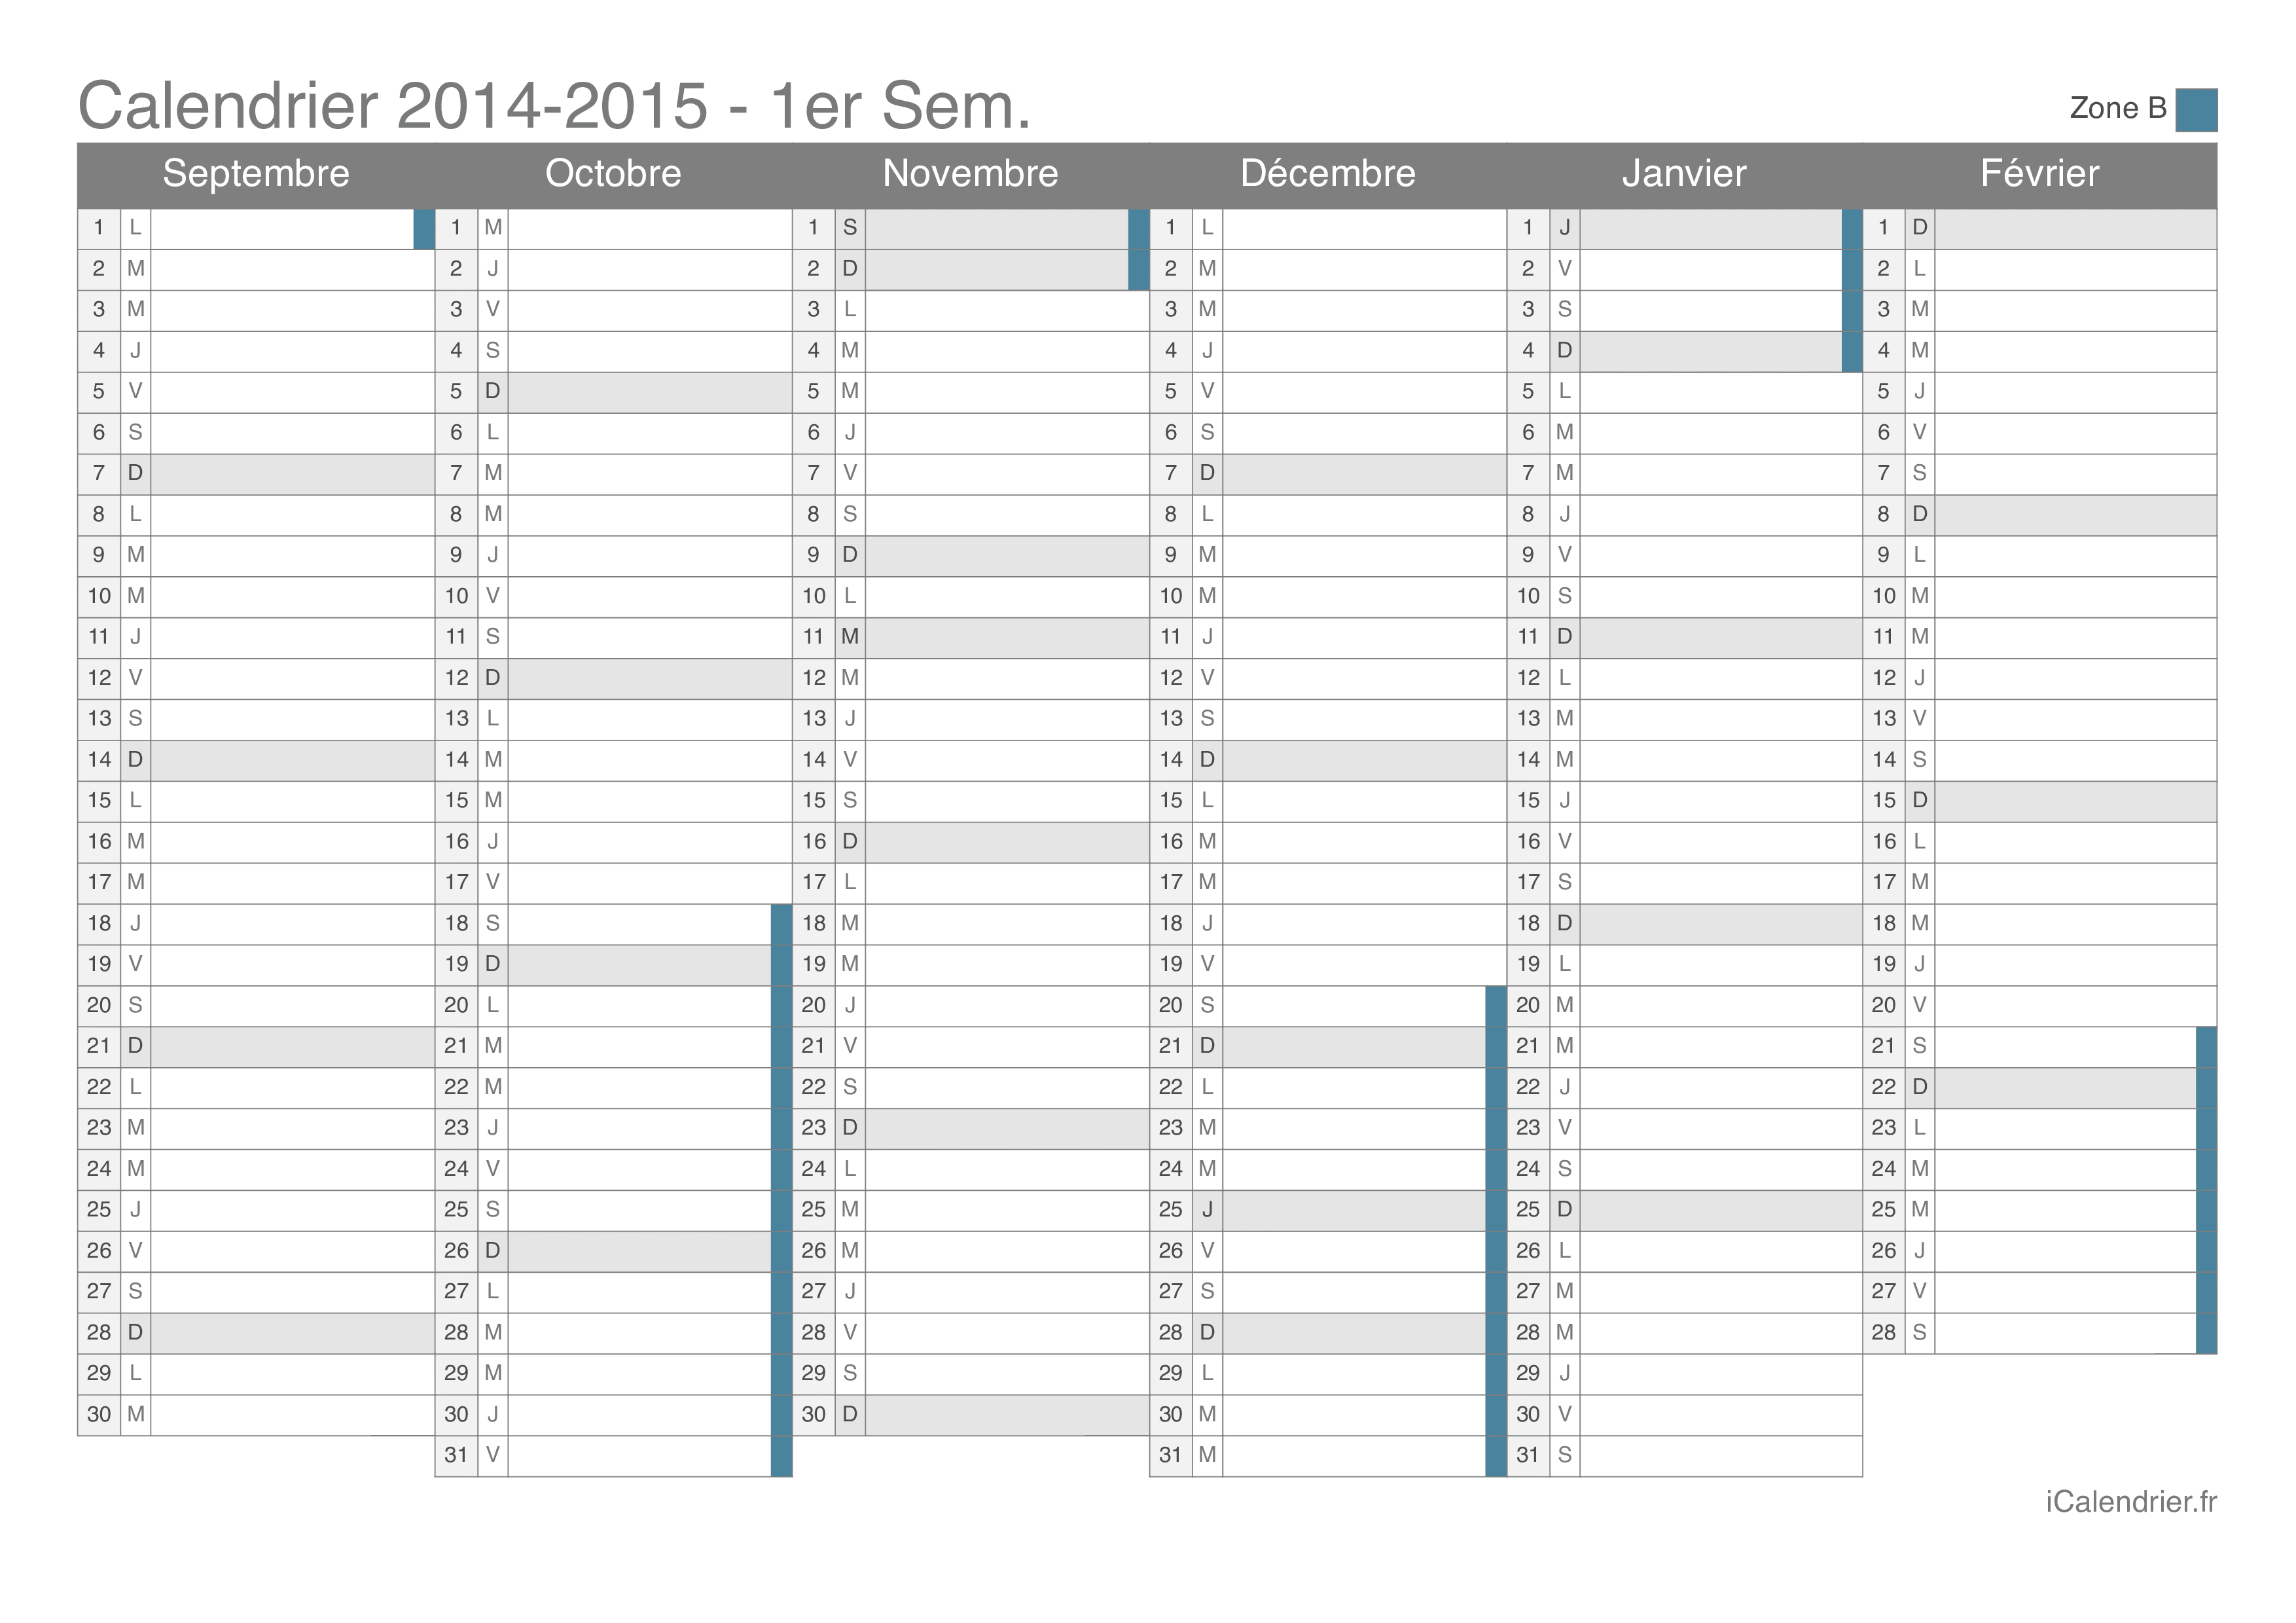 Calendrier des vacances scolaires 2014-2015 par semestre de la zone B